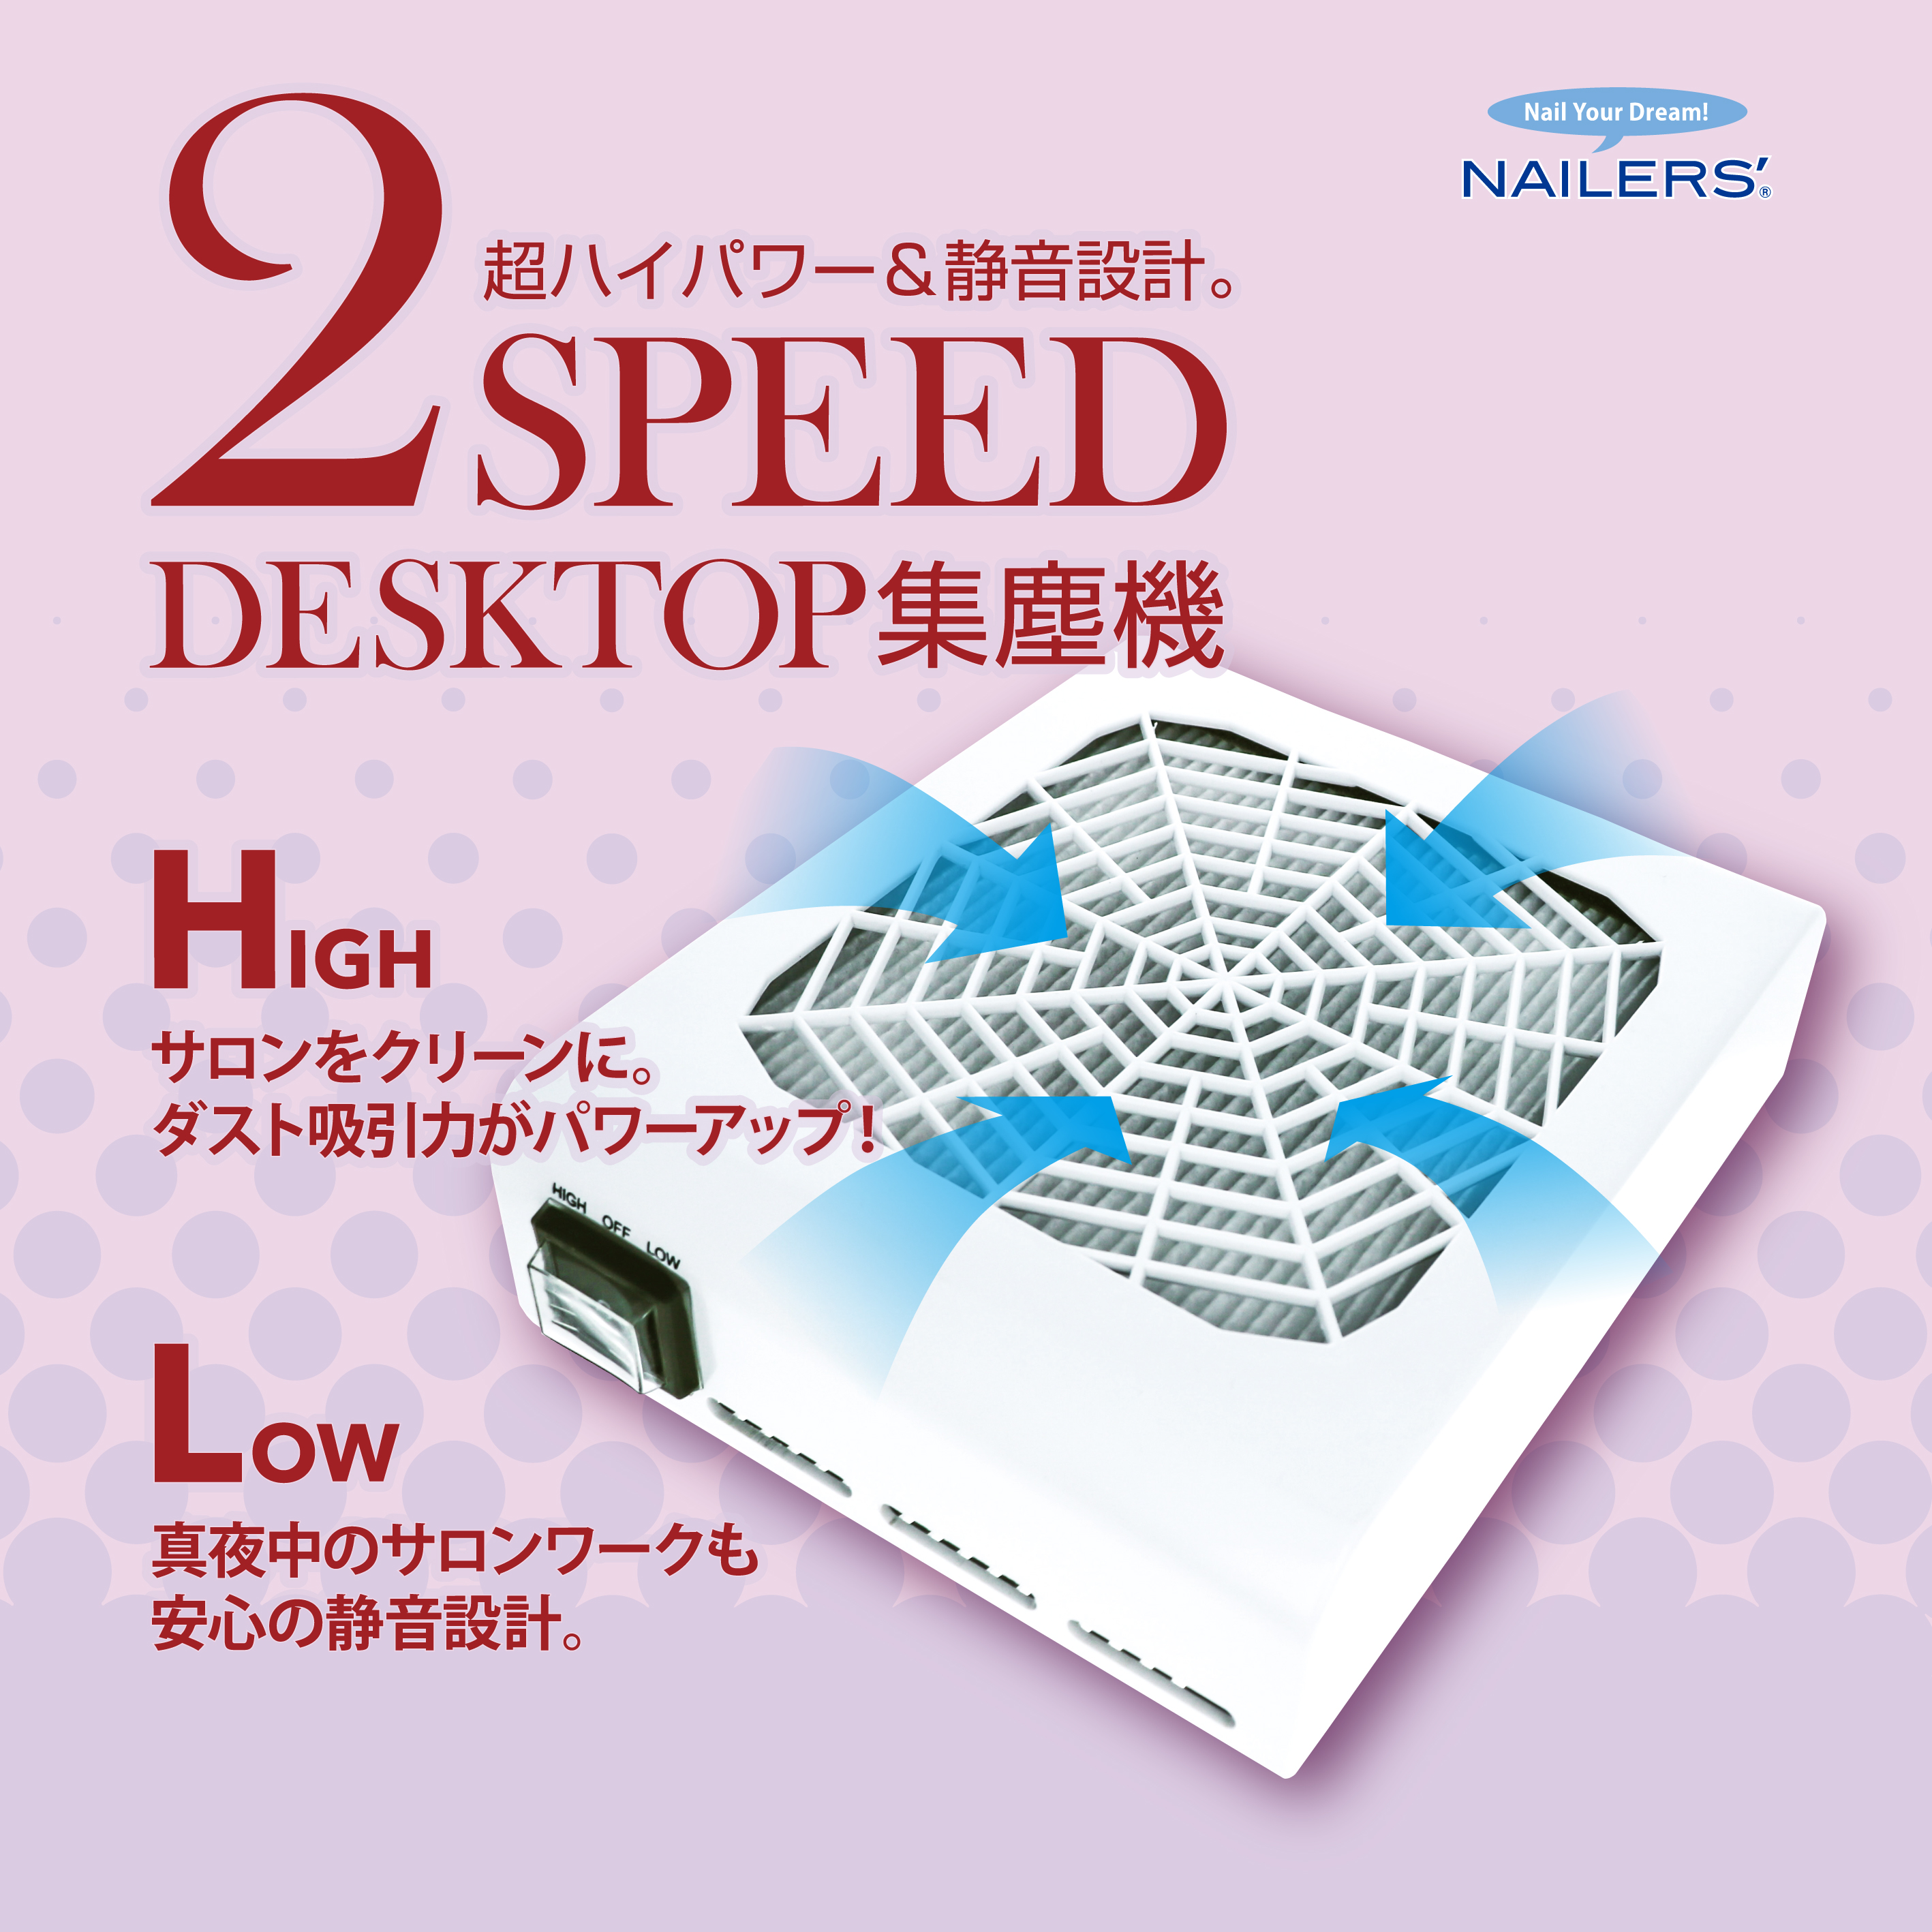 【お試しレンタル】2スピード デスクトップ集塵機(2DT-2)画像